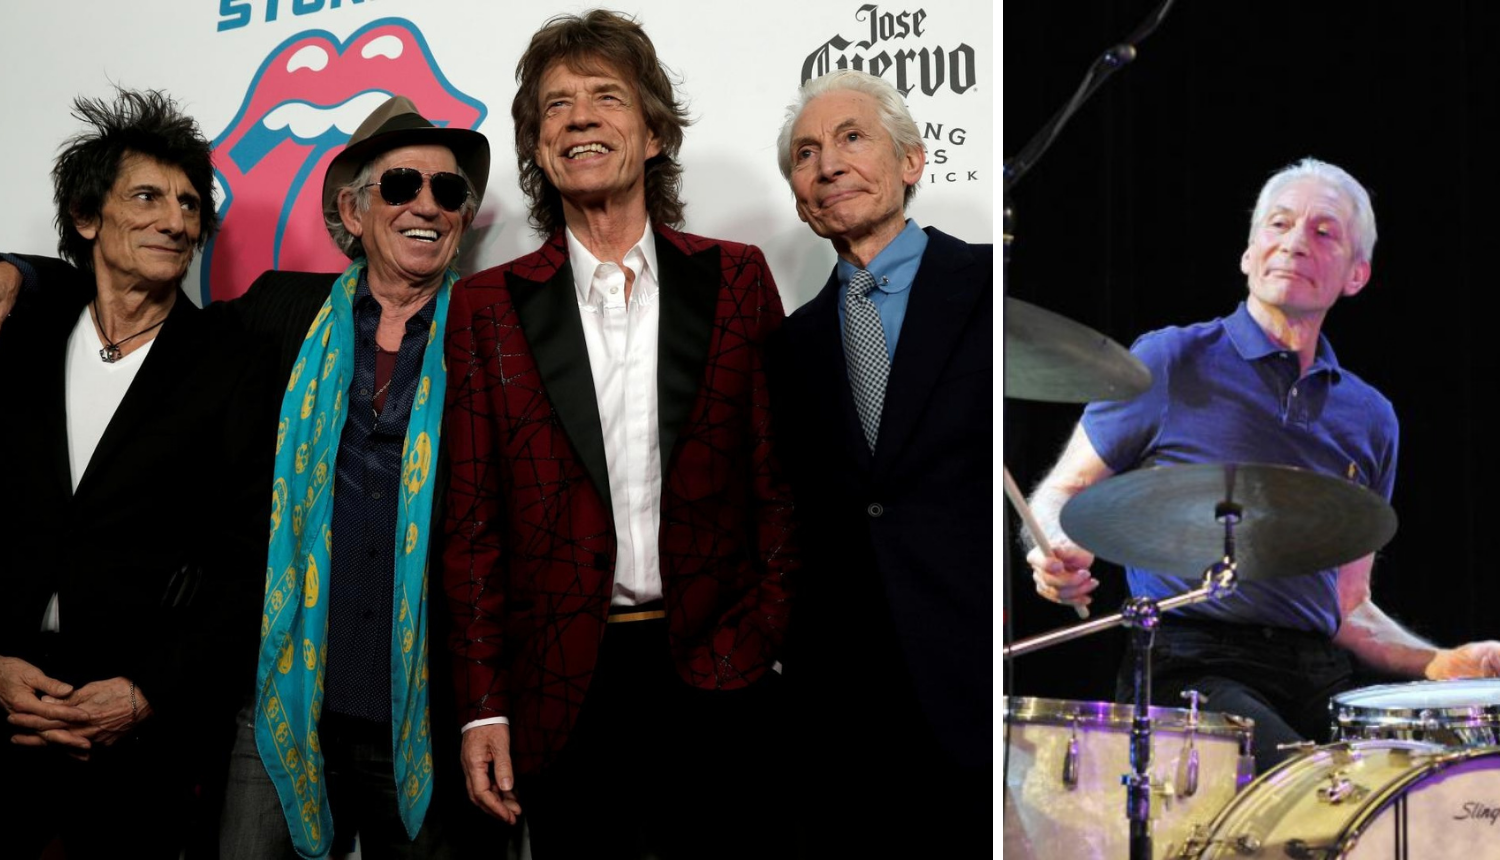 Zvijezda Rolling Stonesa Charlie Watts iznenada morao odustati od turneje, našli su mu zamjenu